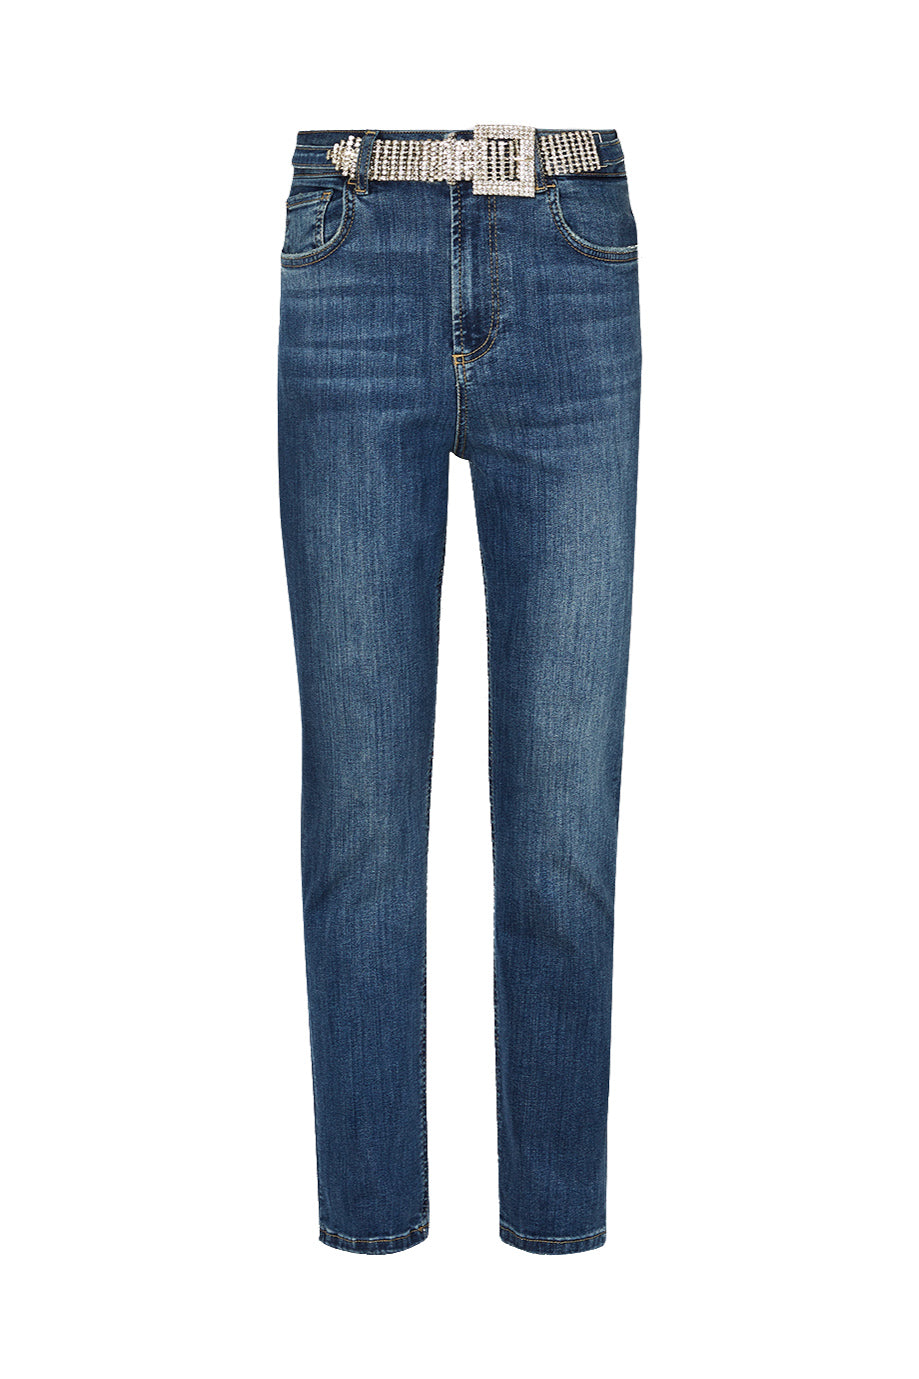 LIU JO Jeans cropped vita alta Bottom Up in denim scuro con cintura - Mancinelli 1954